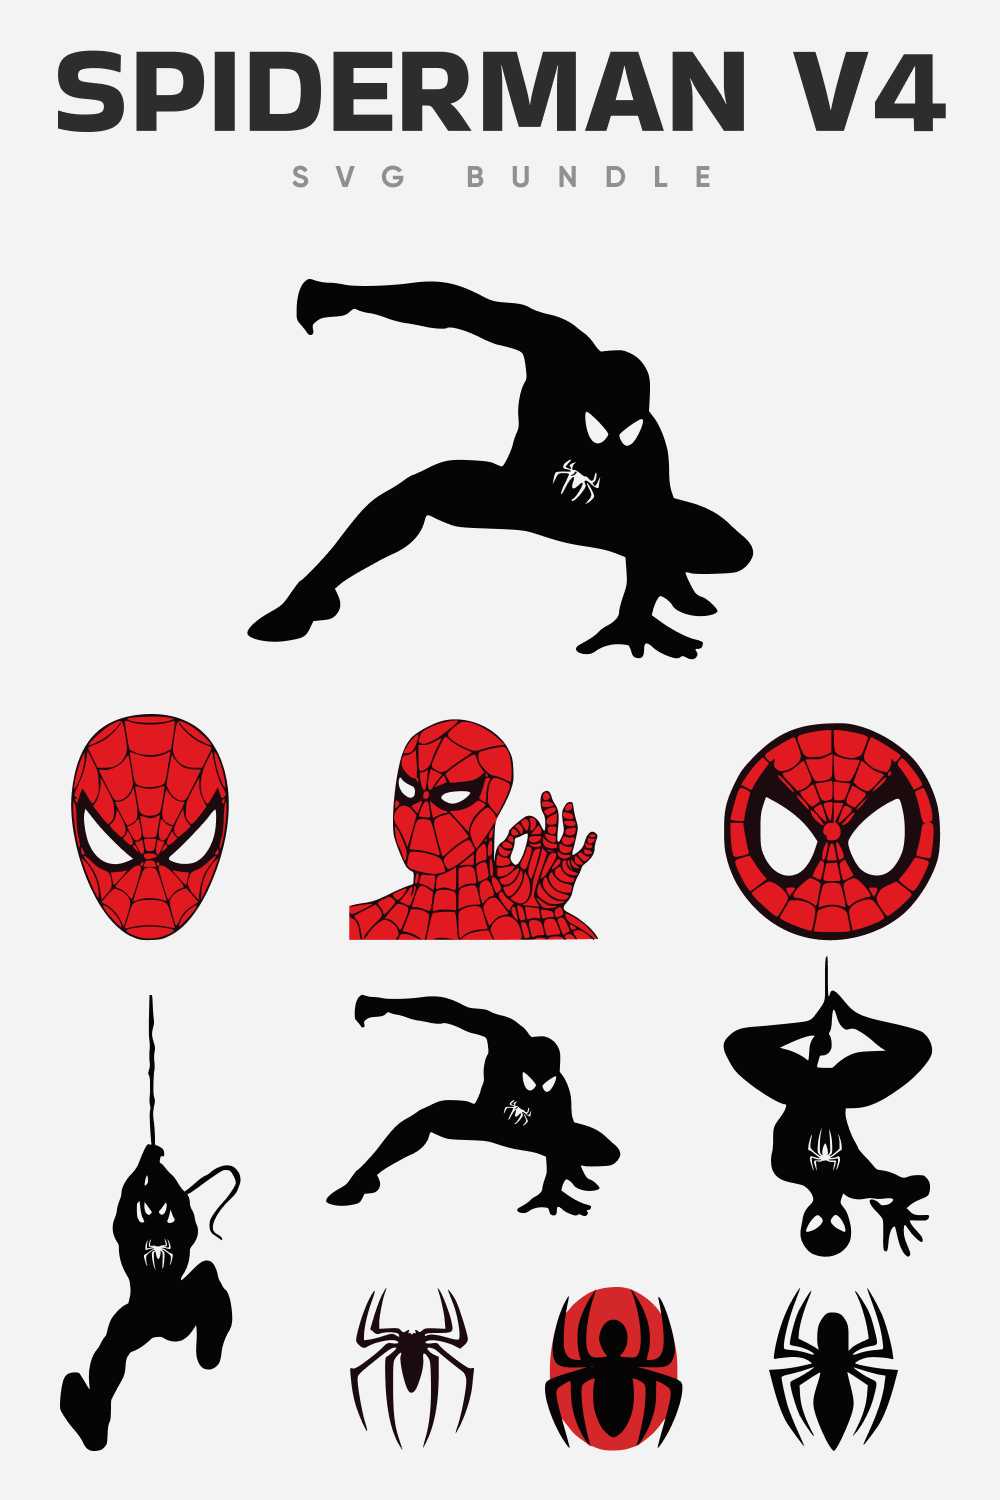 Spiderman v4 SVG bundle.